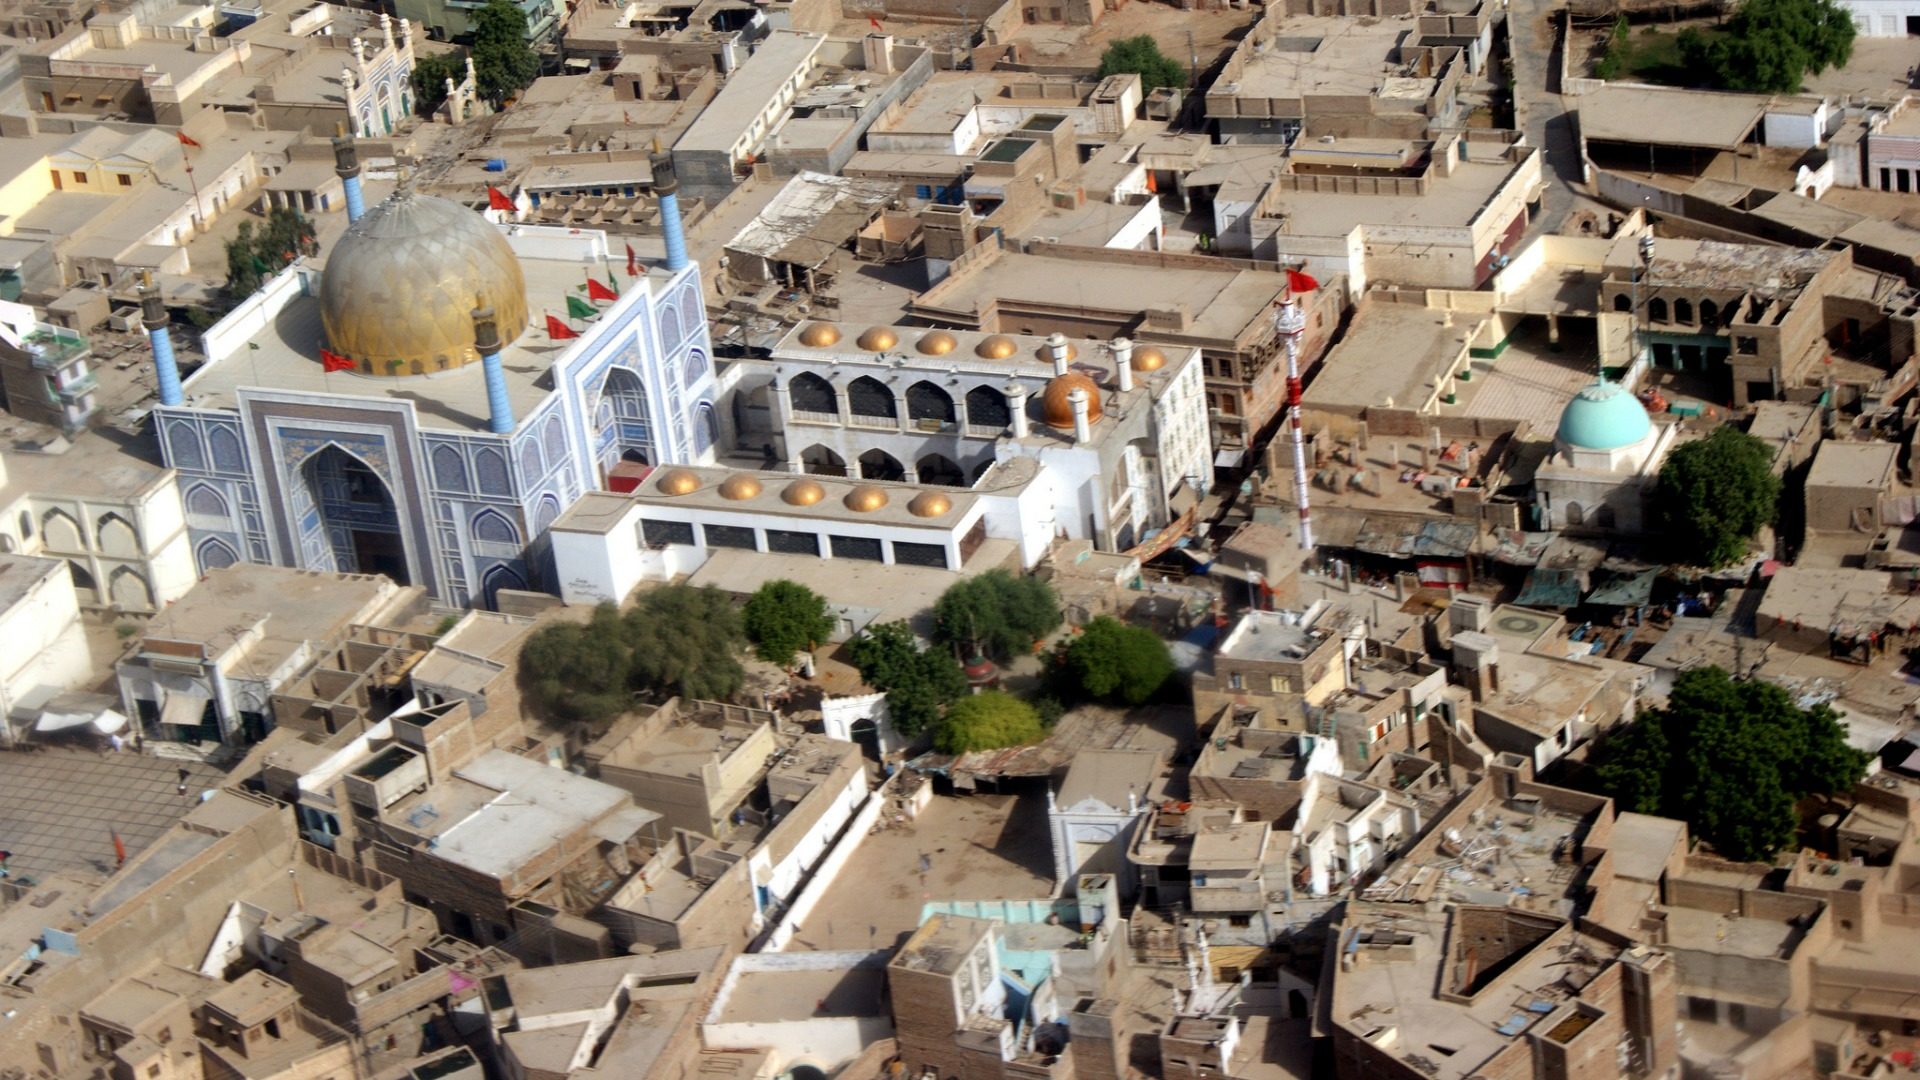 L'attentat suicide a fait au moins 70 morts dans un temple soufi à Sehwan Sharif, au Pakistan. (Photo: Flickr/ONU/CC BY-NC-ND 2.0)